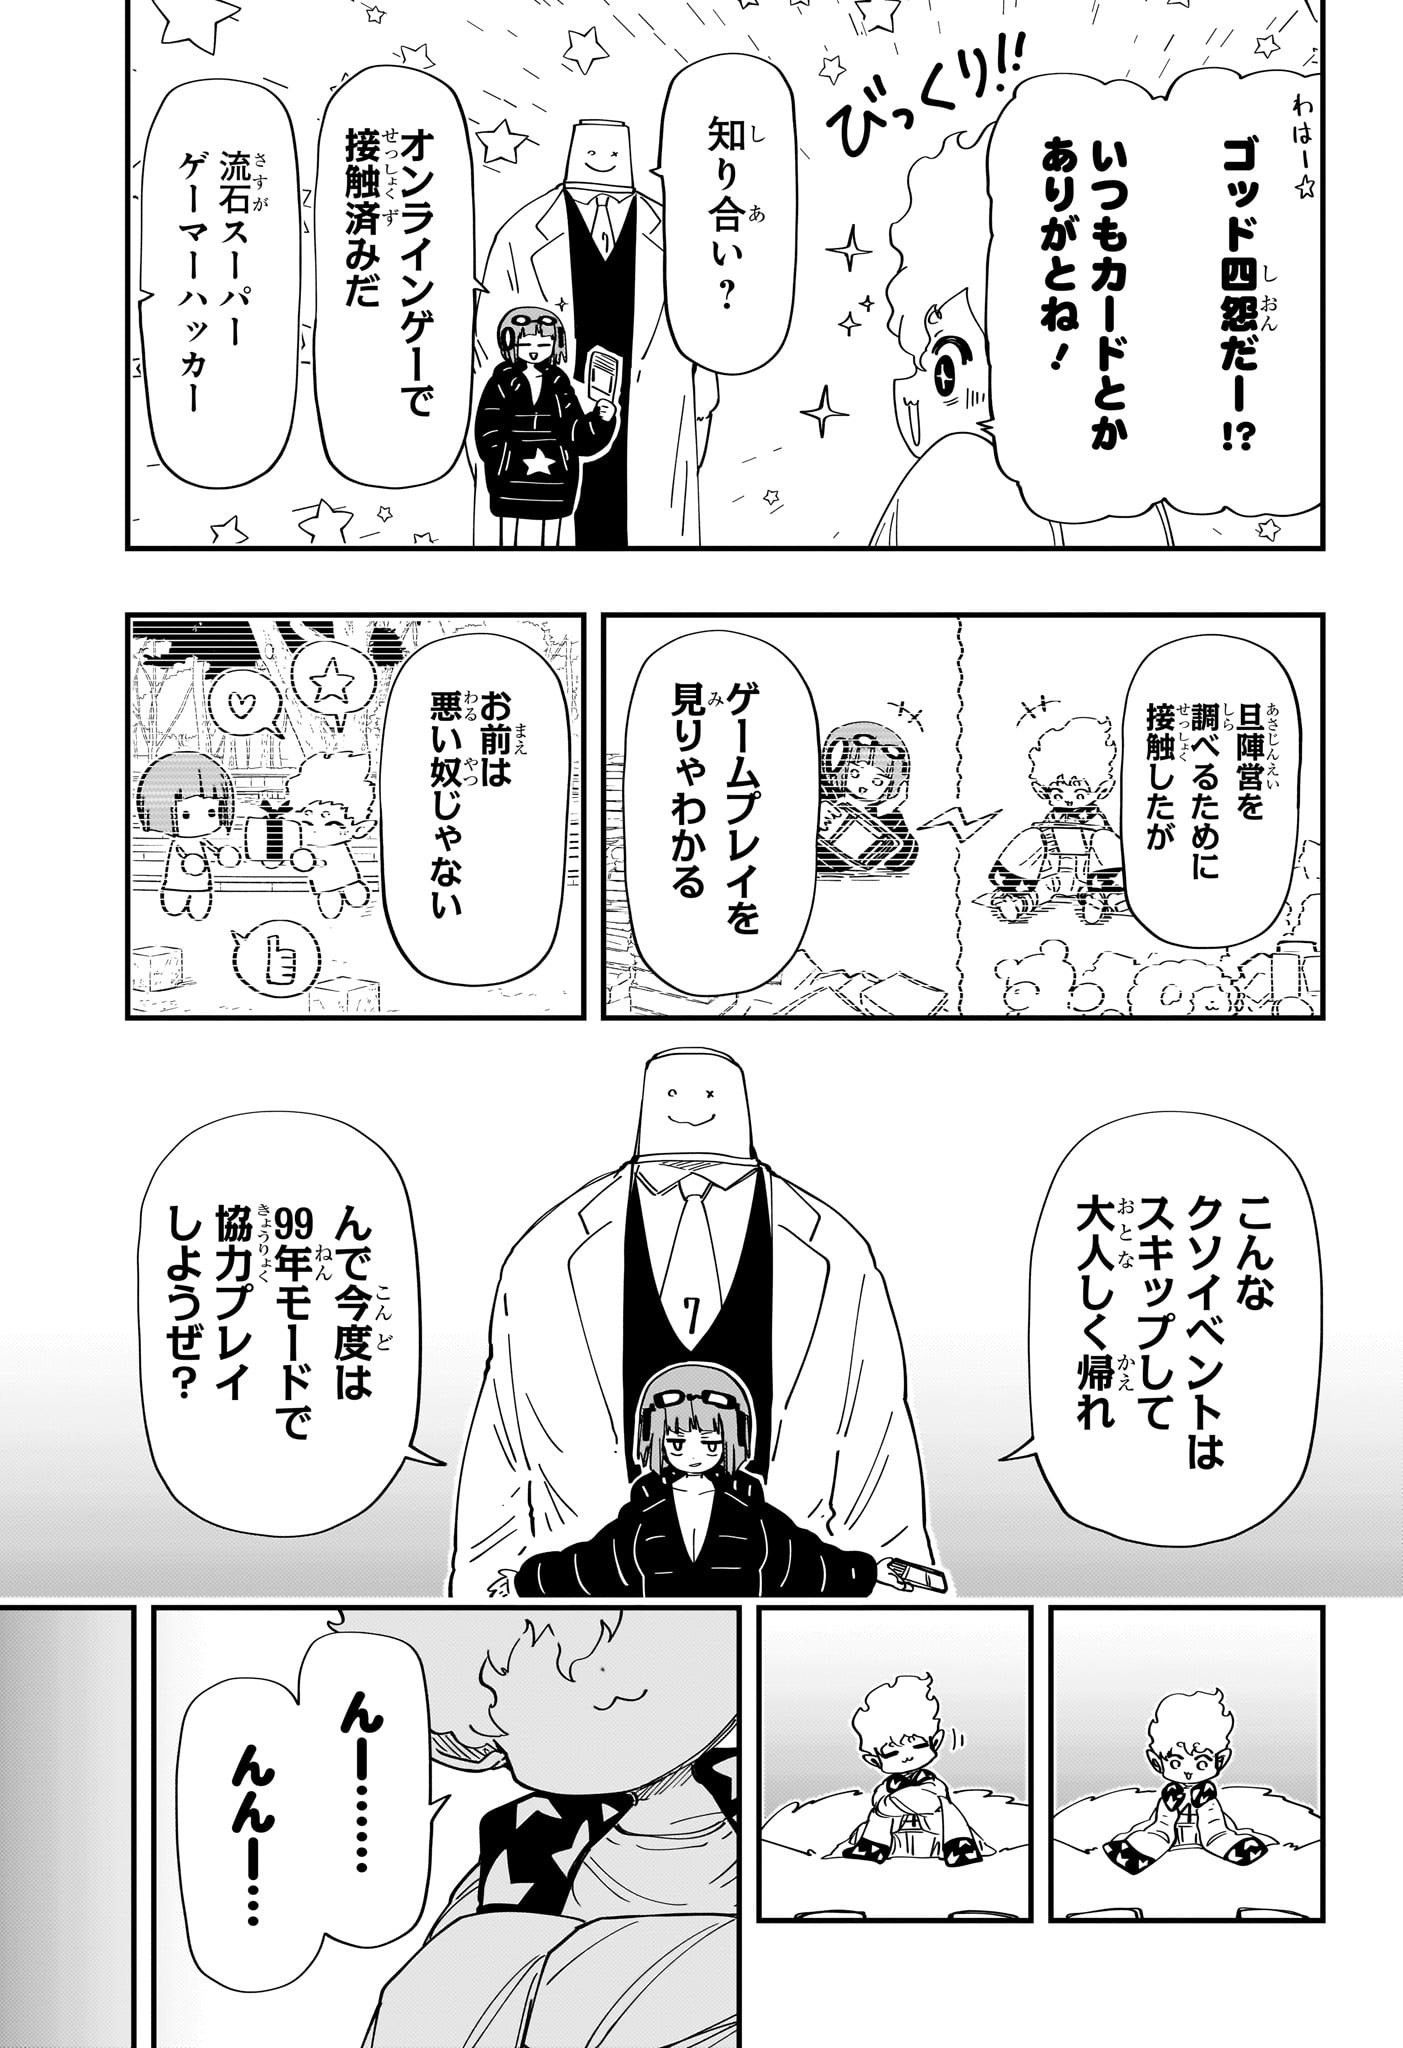 Yozakura-san Chi no Daisakusen - Chapter 225 - Page 15